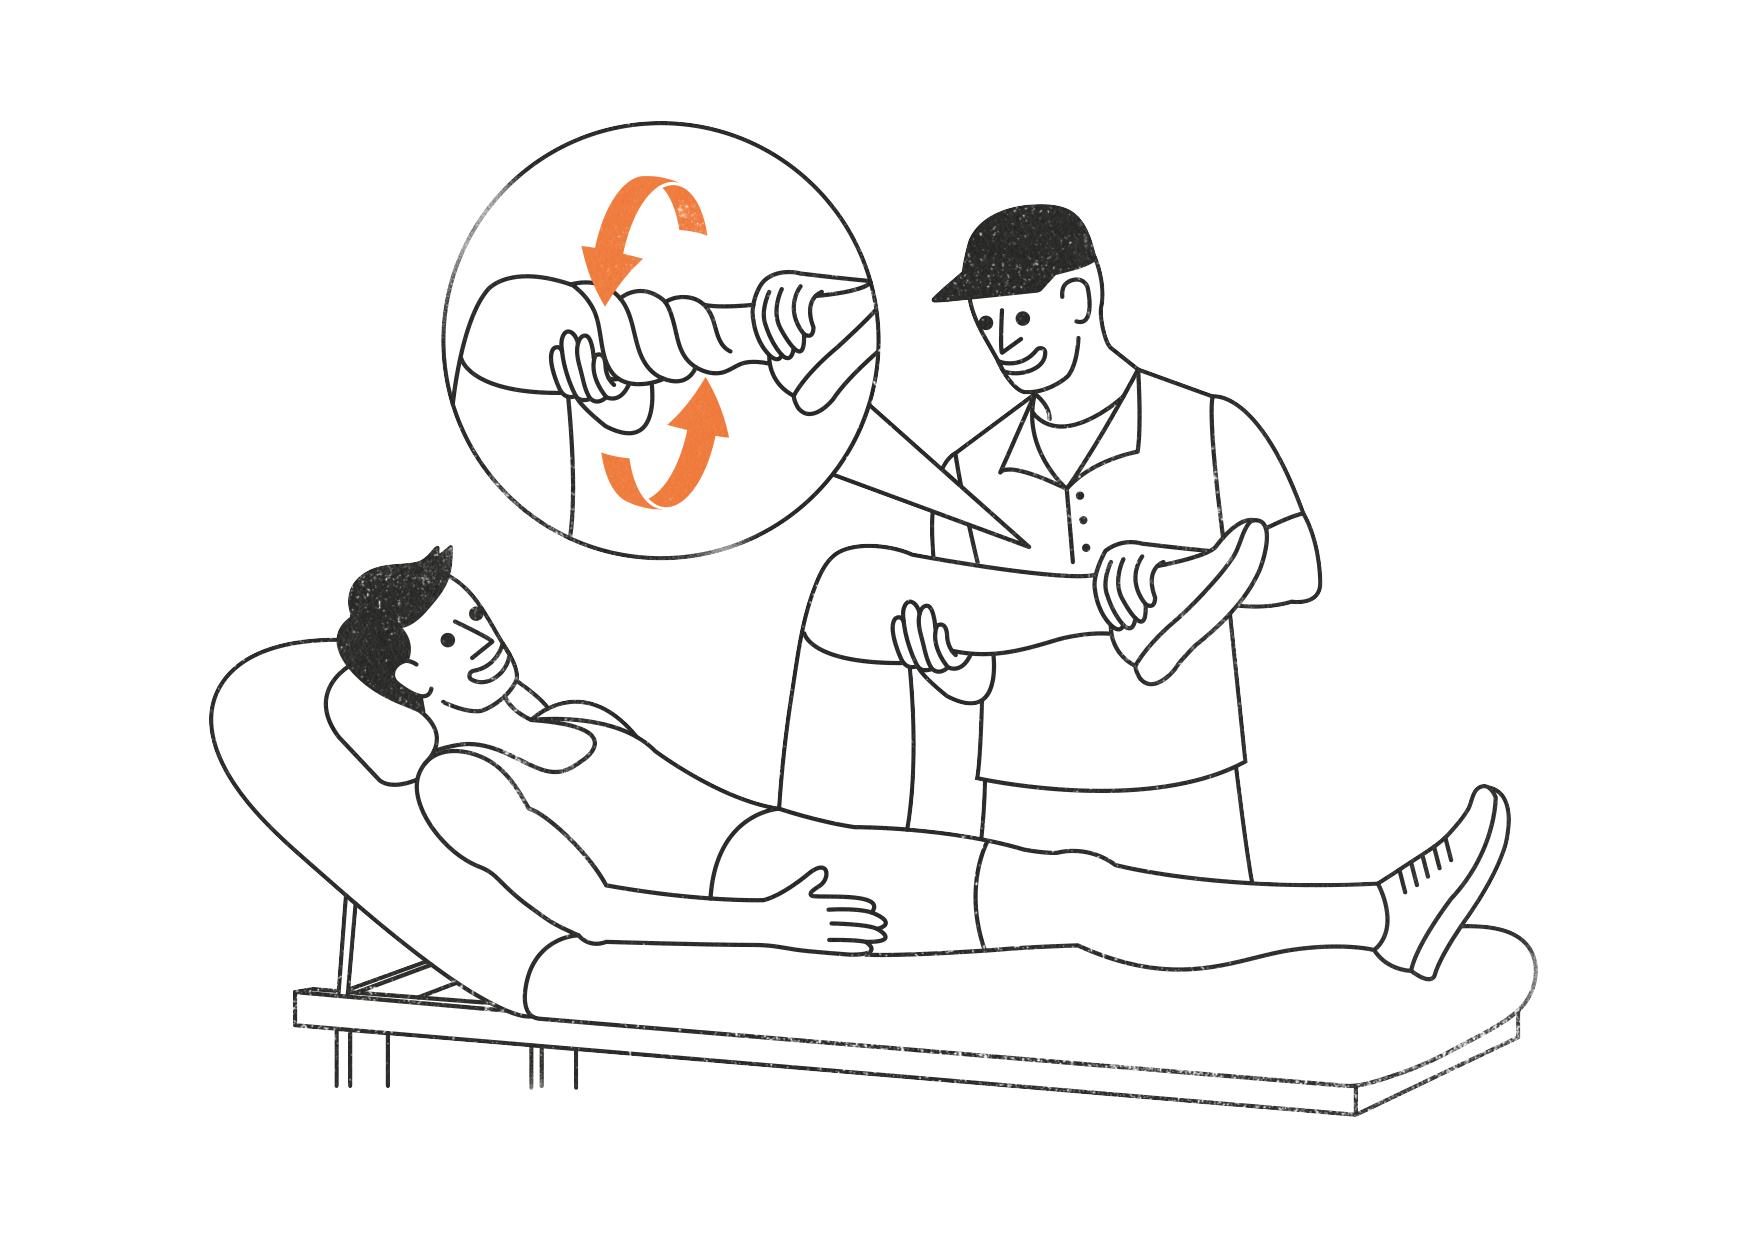 Eine Grafik von zwei Personen. Die eine liegt auf einer Behandlungsliege und die zweite hält das Bein der liegenden Person in den Händen. Darüber ist eine Sprechblase, in der ein verdrehtes Bein zu sehen ist.